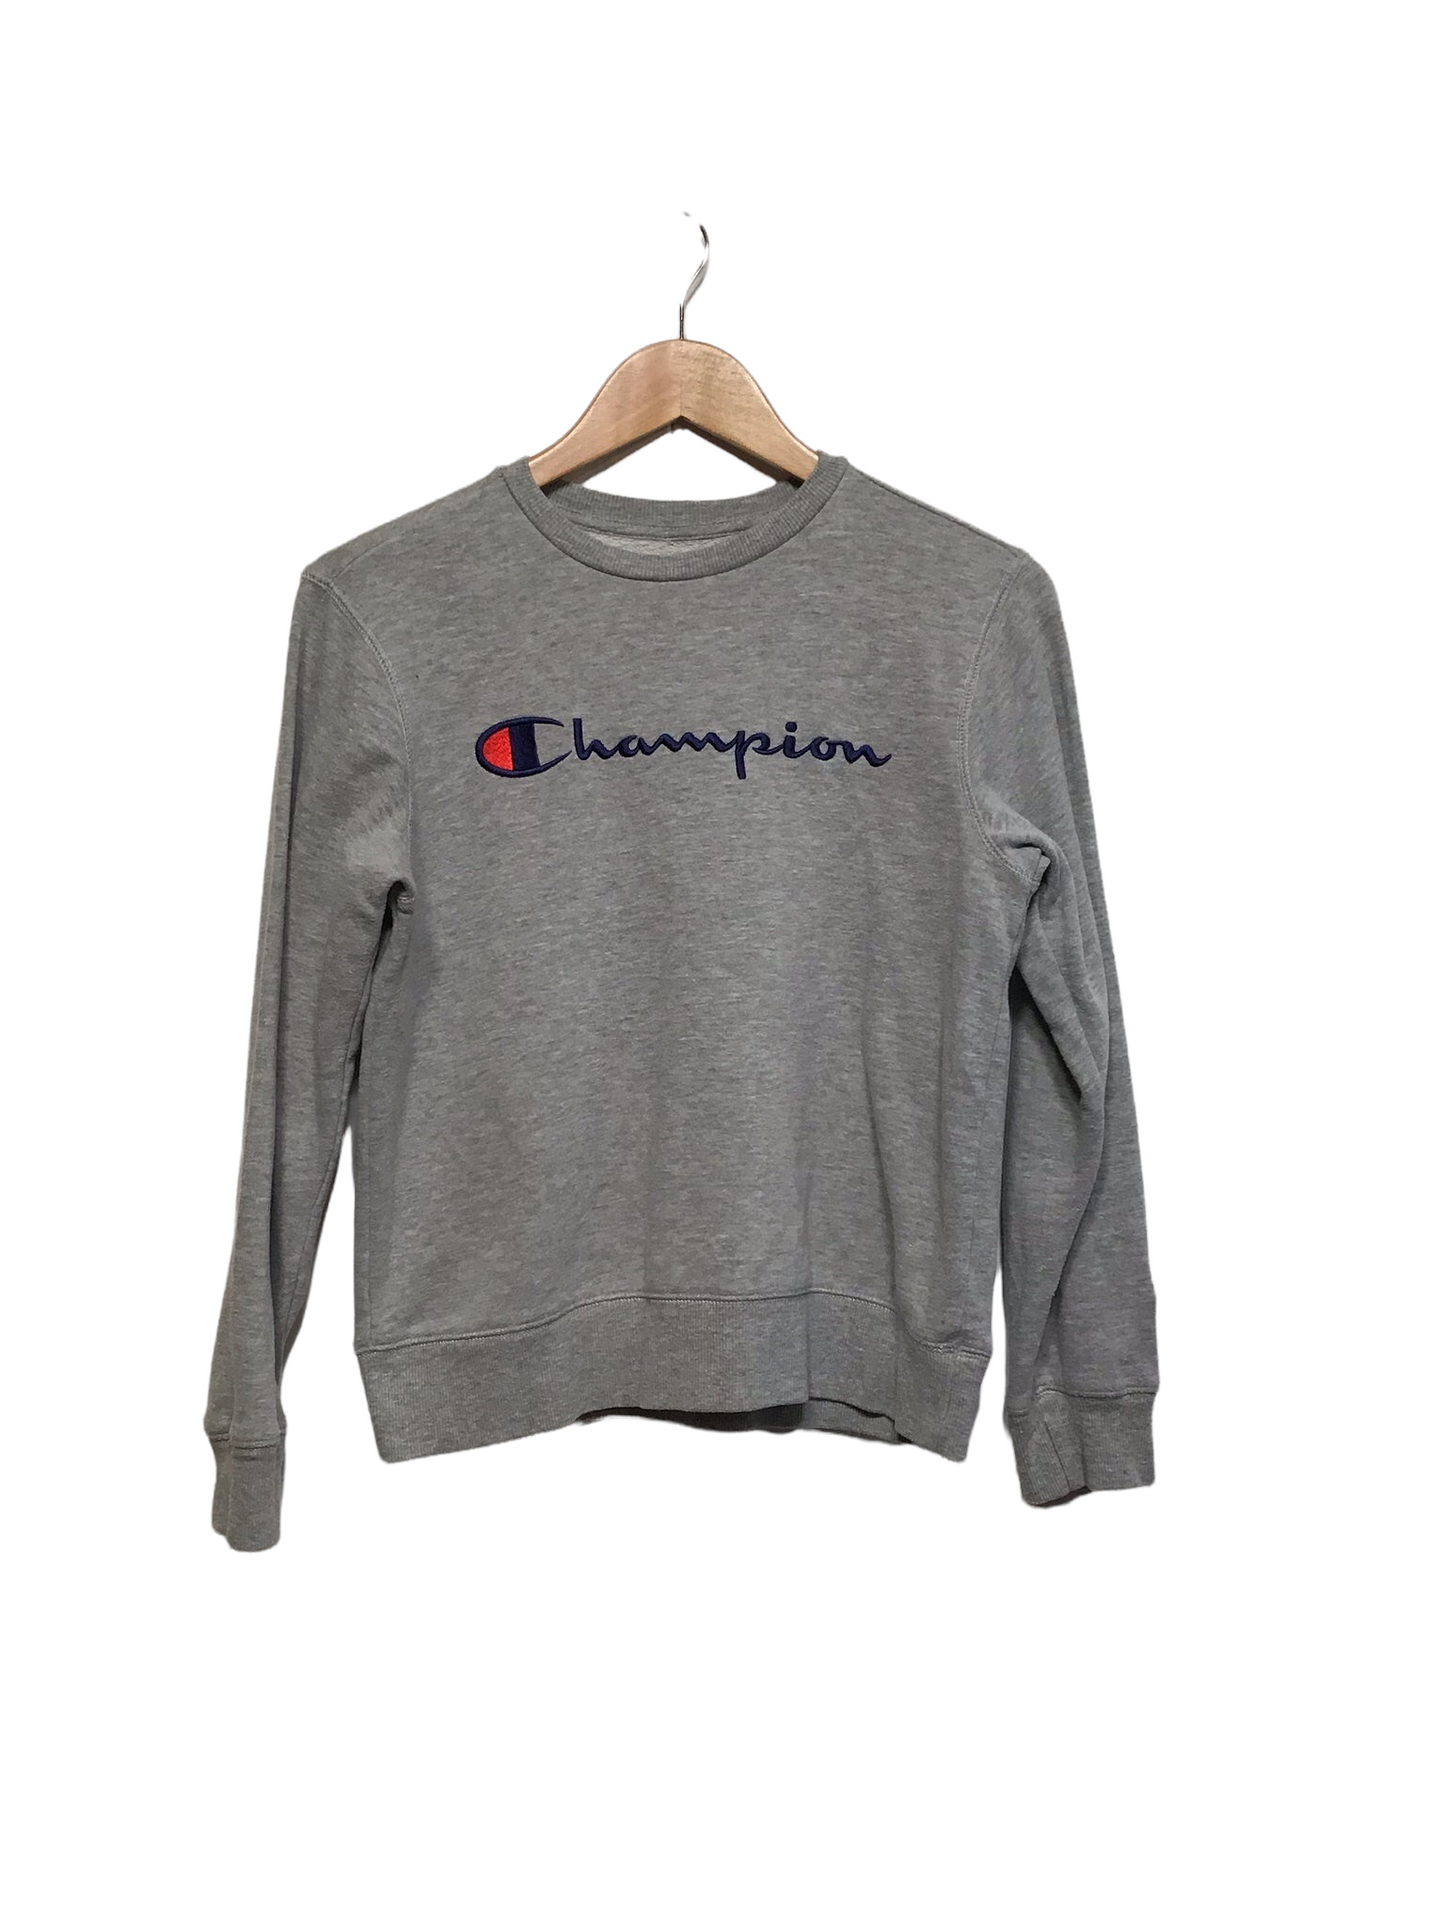 Champion Sweatshirt (Size XS)